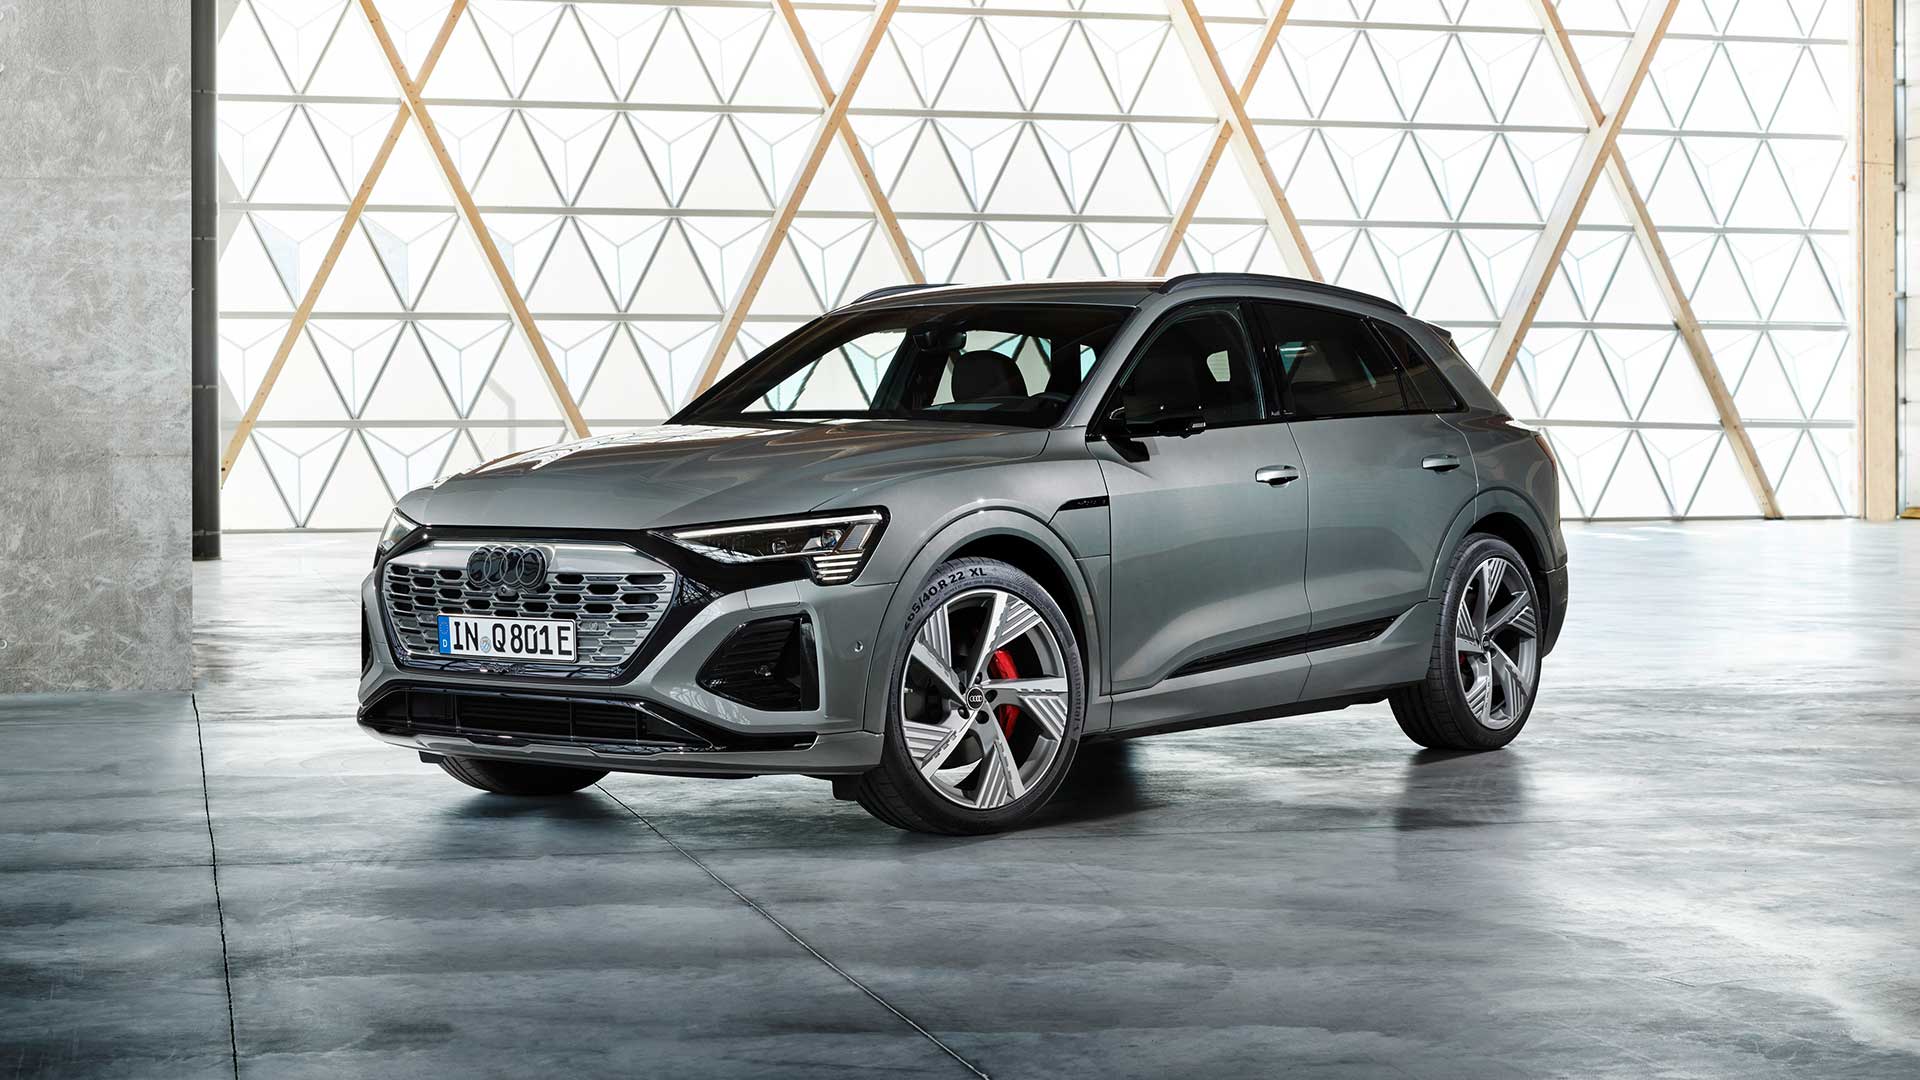 Mehr Leistung & Reichweite: der neue Audi Q8 e-tron